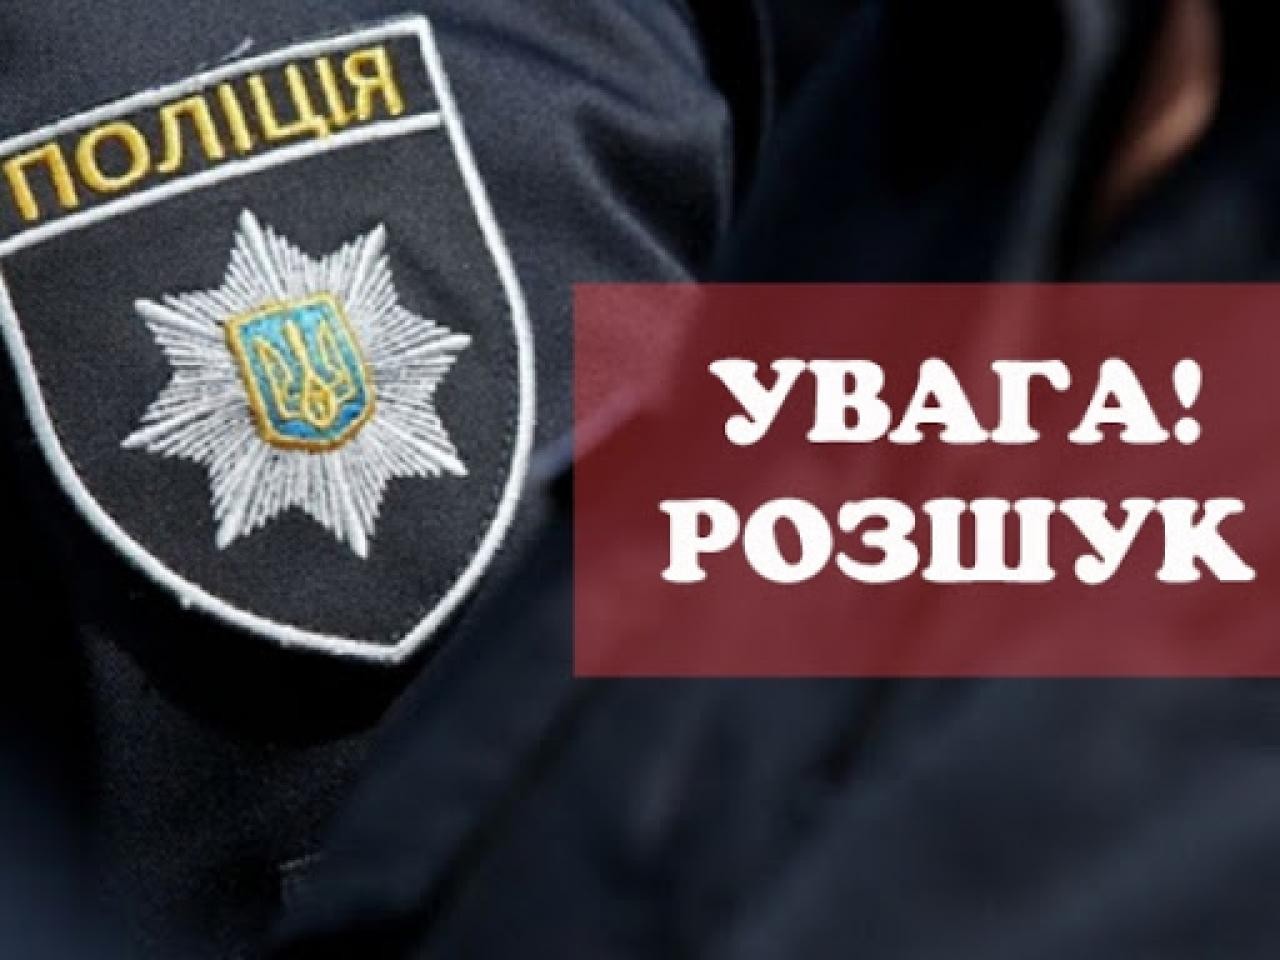 Може бути на Прикарпатті: розшукується 47-річний злочинець з Тернопільщини (ФОТО)